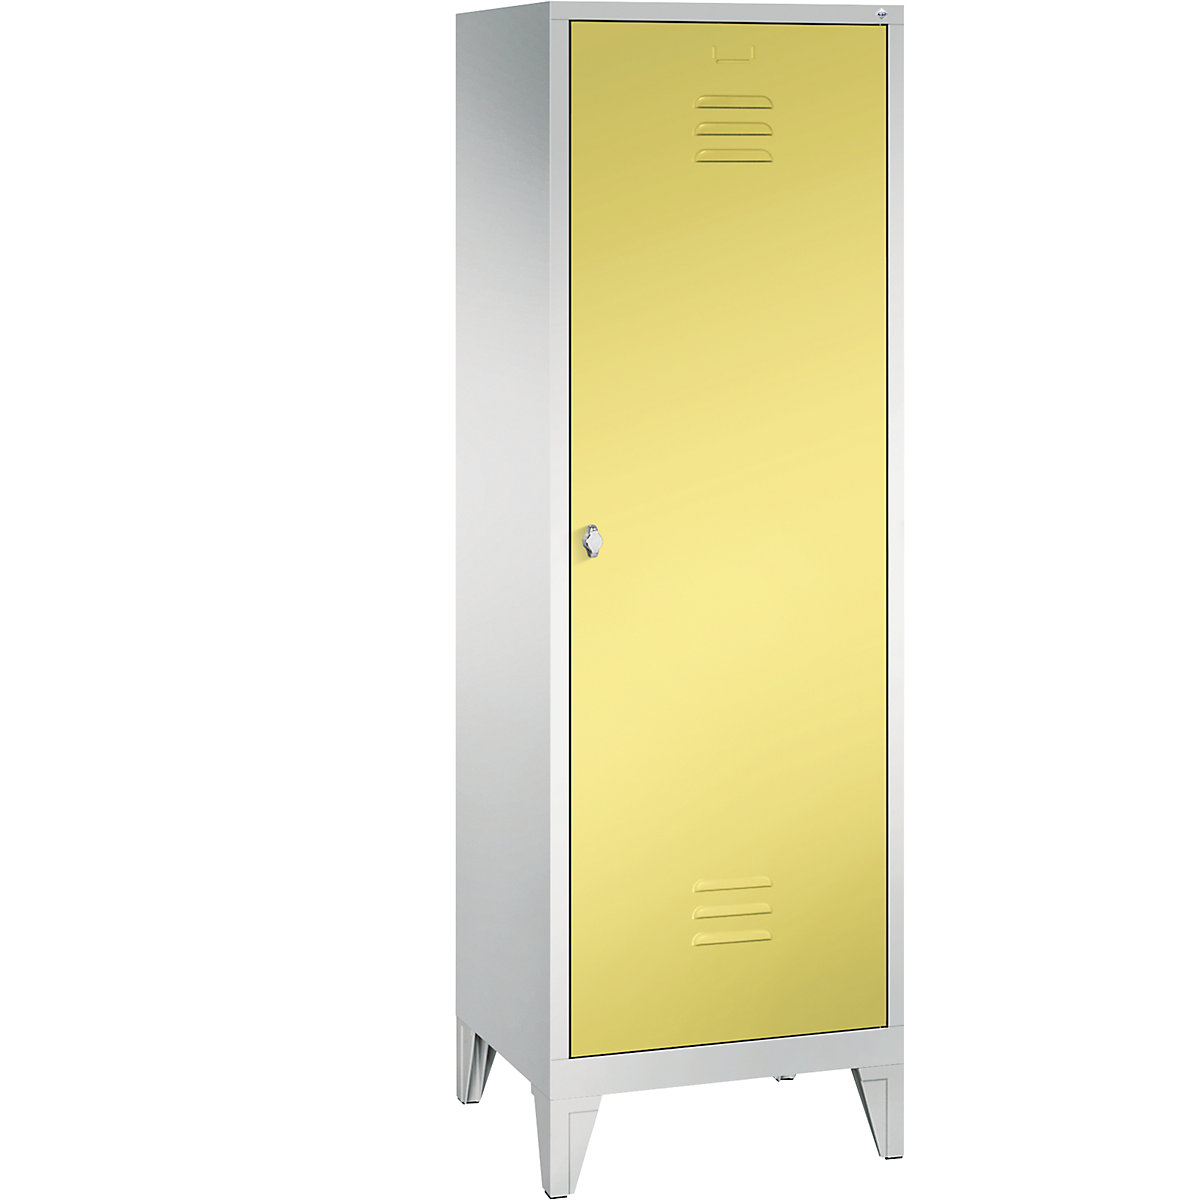 C+P CLASSIC Garderobenschrank mit Füßen, Tür über 2 Abteile, 2 Abteile, Abteilbreite 300 mm, lichtgrau / schwefelgelb